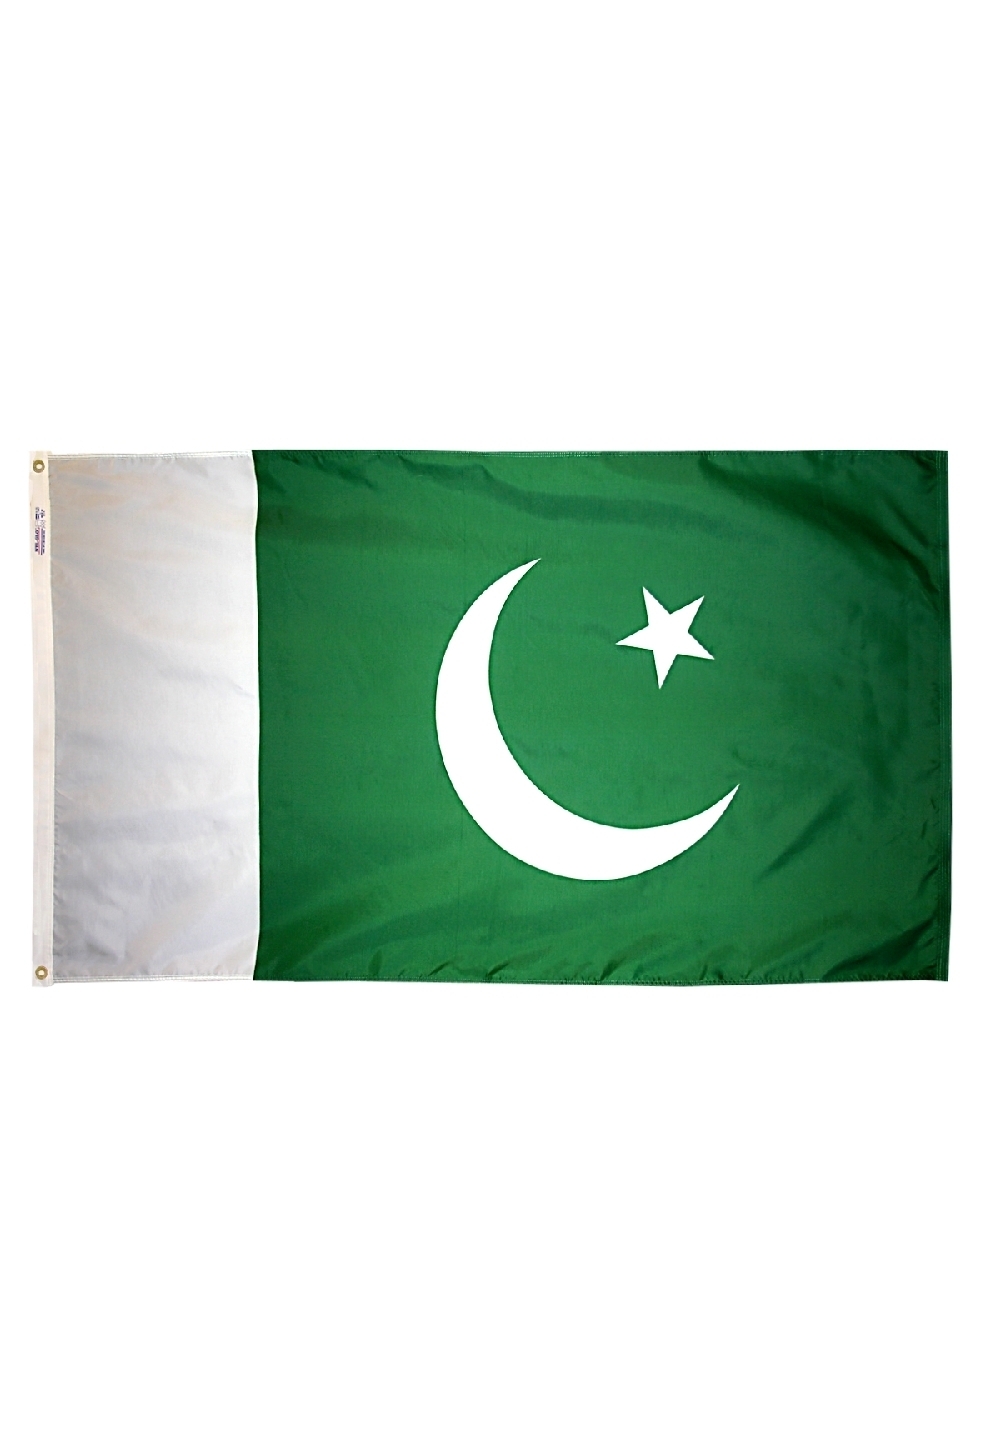 Зелено белый флаг с месяцем. Флаги мусульманских стран. Флаги мусульманских республик. Зелено белый флаг с полумесяцем и звездой. Флаг мусульманских государств.